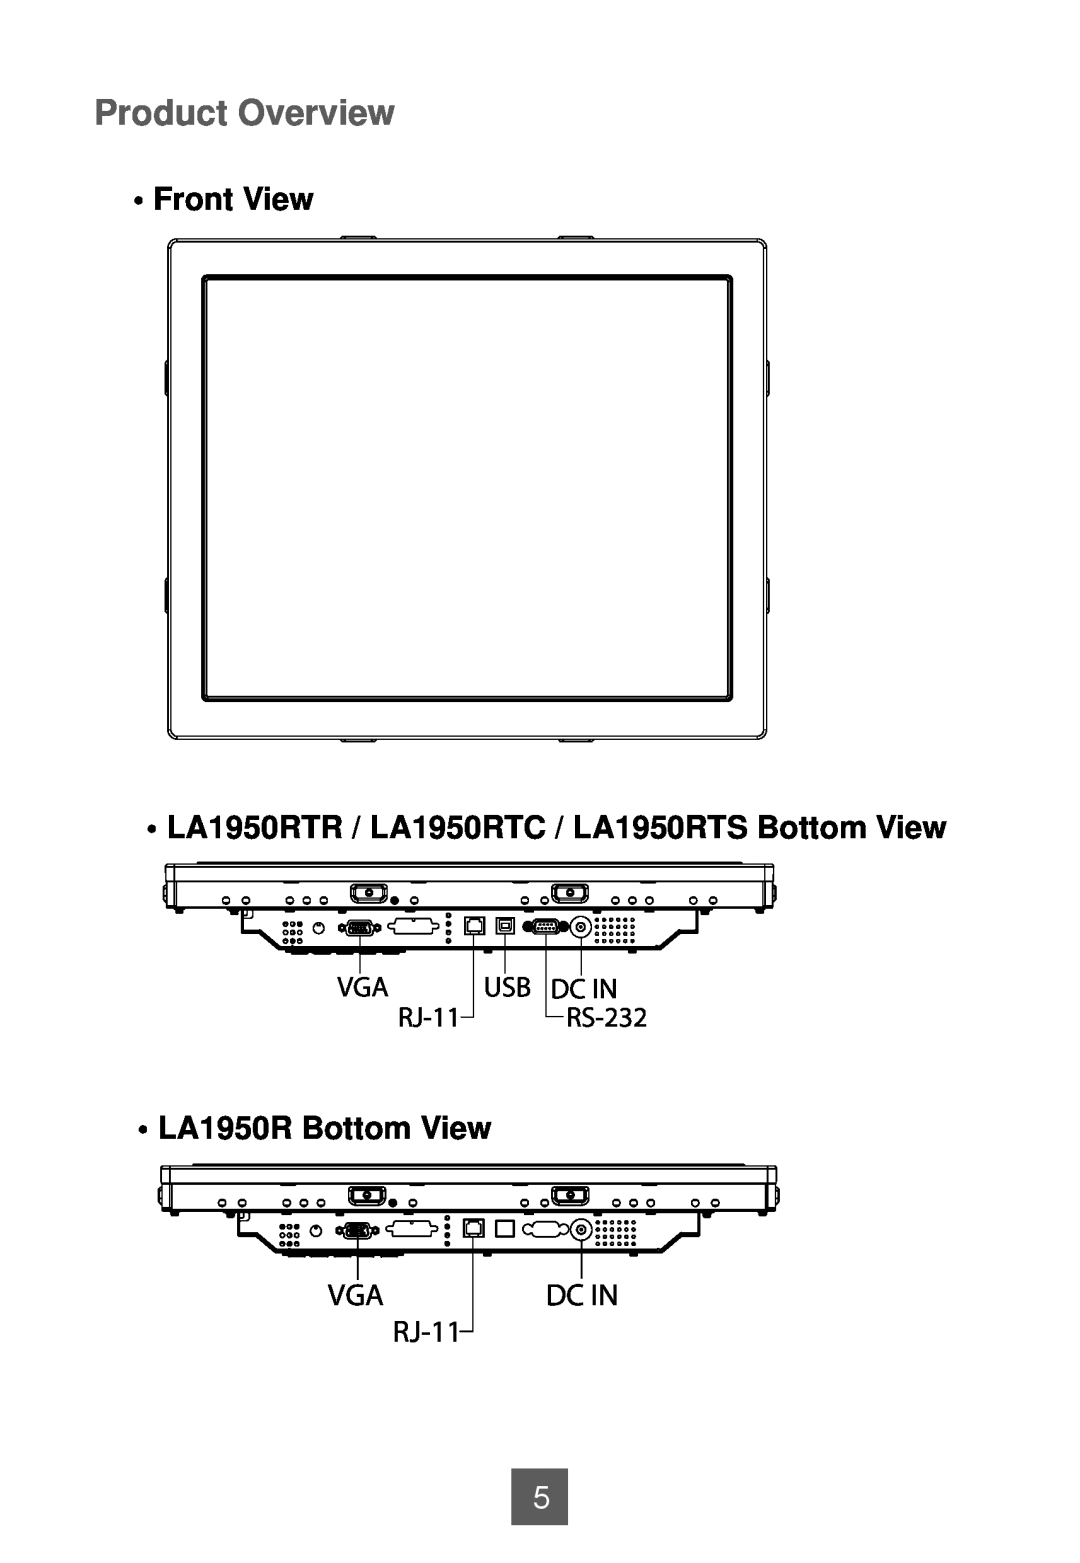 Planar Product Overview, Front View LA1950RTR / LA1950RTC / LA1950RTS Bottom View, LA1950R Bottom View, RJ-11, Dc In 